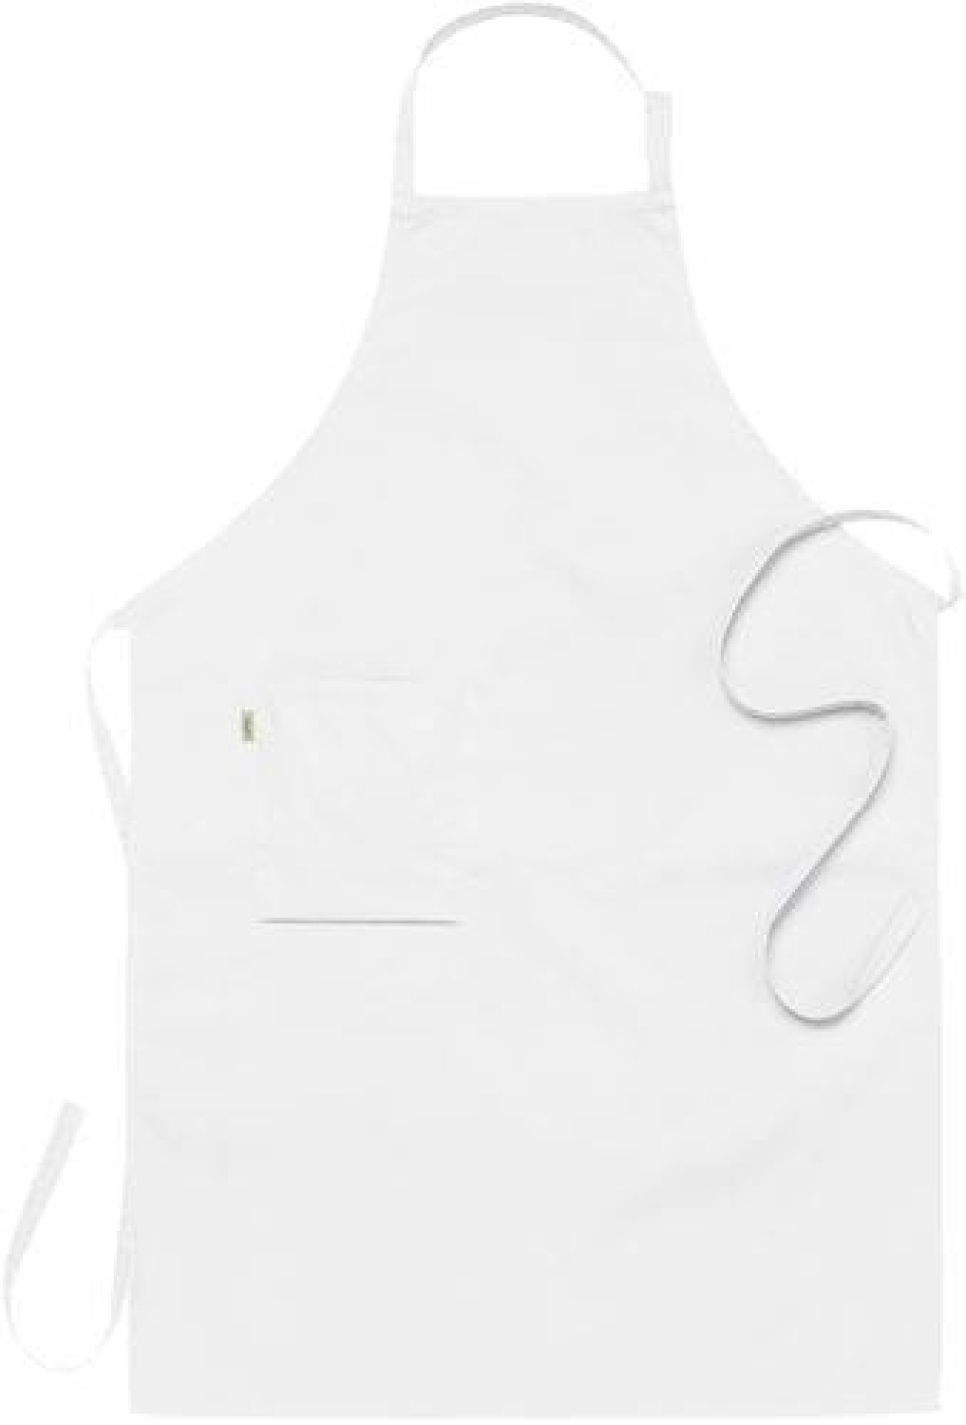 Forkle, hvit 75 x 110 cm - Segers i gruppen Matlaging / Kjøkkentekstiler / Forkle hos The Kitchen Lab (1092-10846)